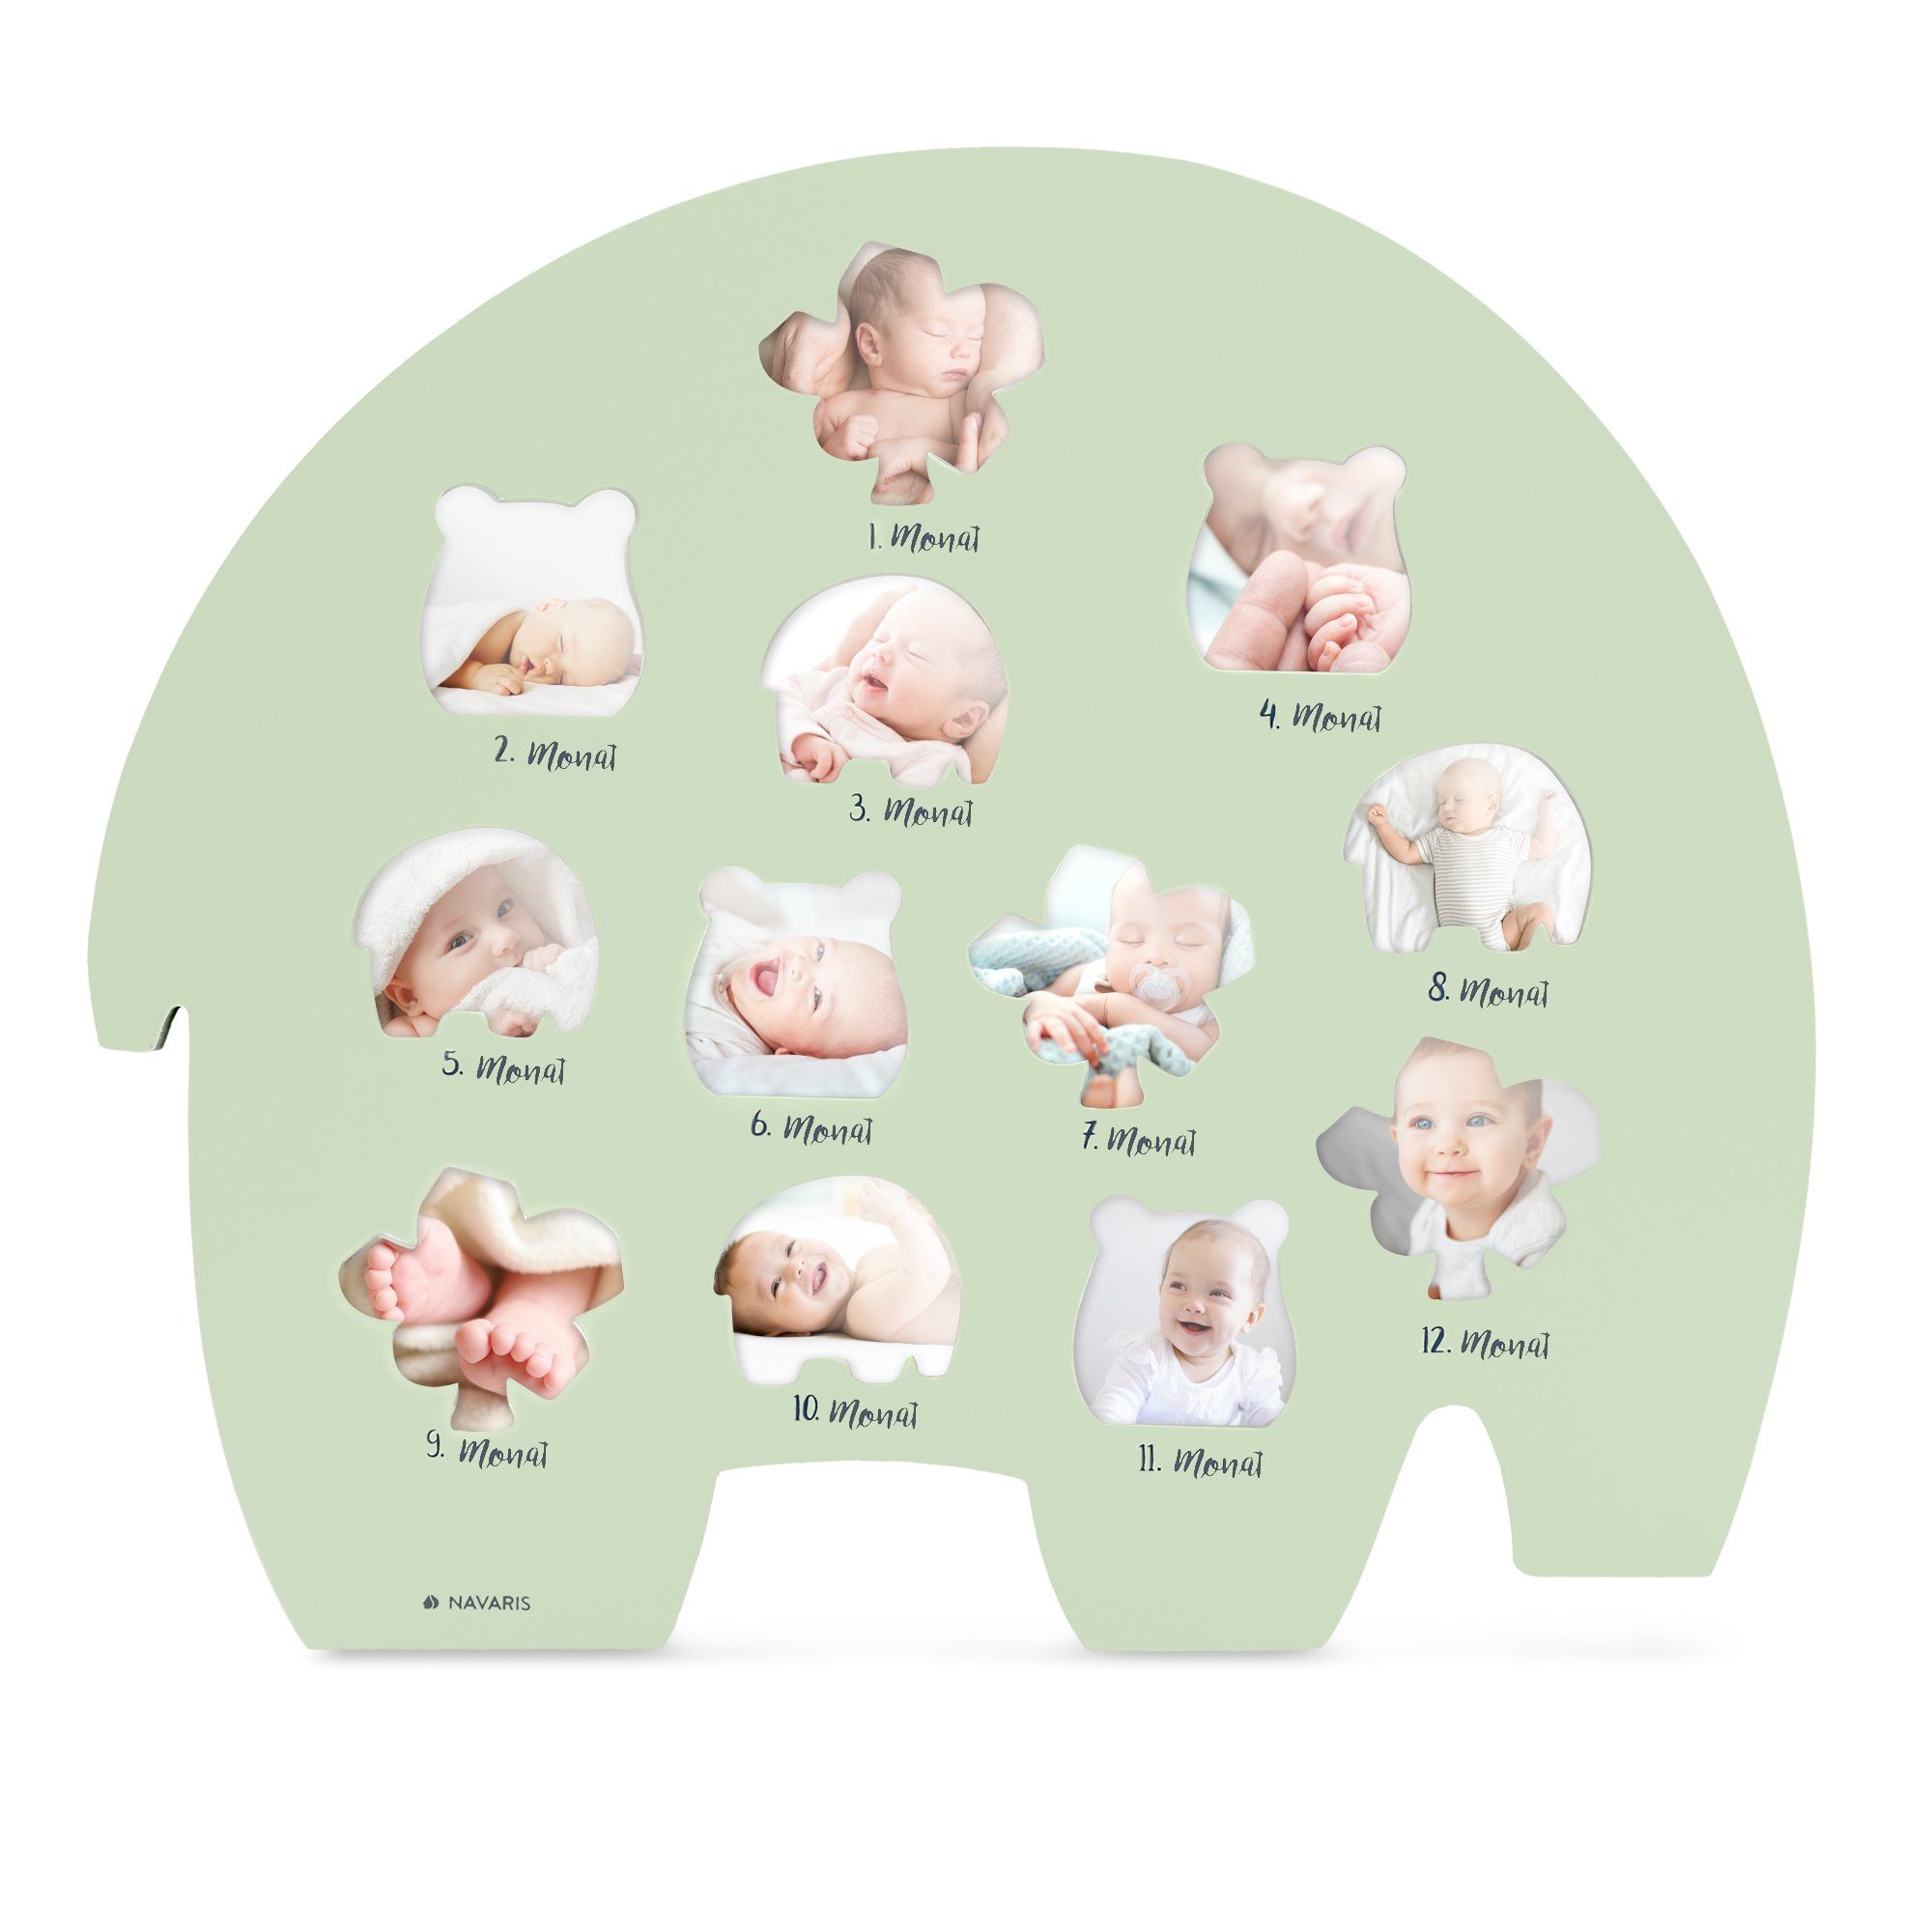 Navaris Bilderrahmen, für Baby Bilder - Monatsbilderrahmen für die ersten 12  Monate - Holzfaser Rahmen für Baby Fotos - erstes Lebensjahr - Deutsch  online kaufen | OTTO